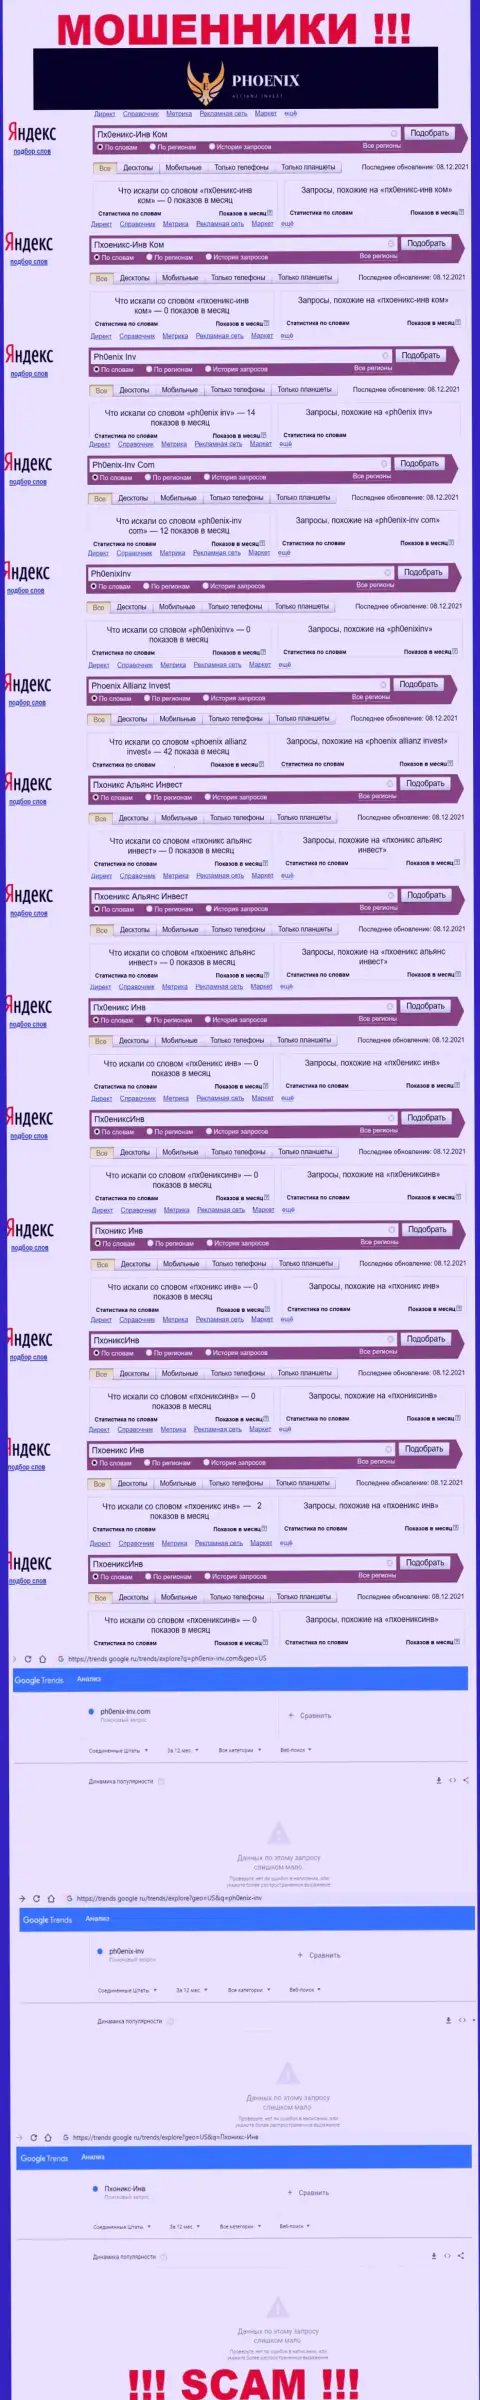 Скриншот статистики запросов по преступно действующей компании Ph0enix-Inv Com